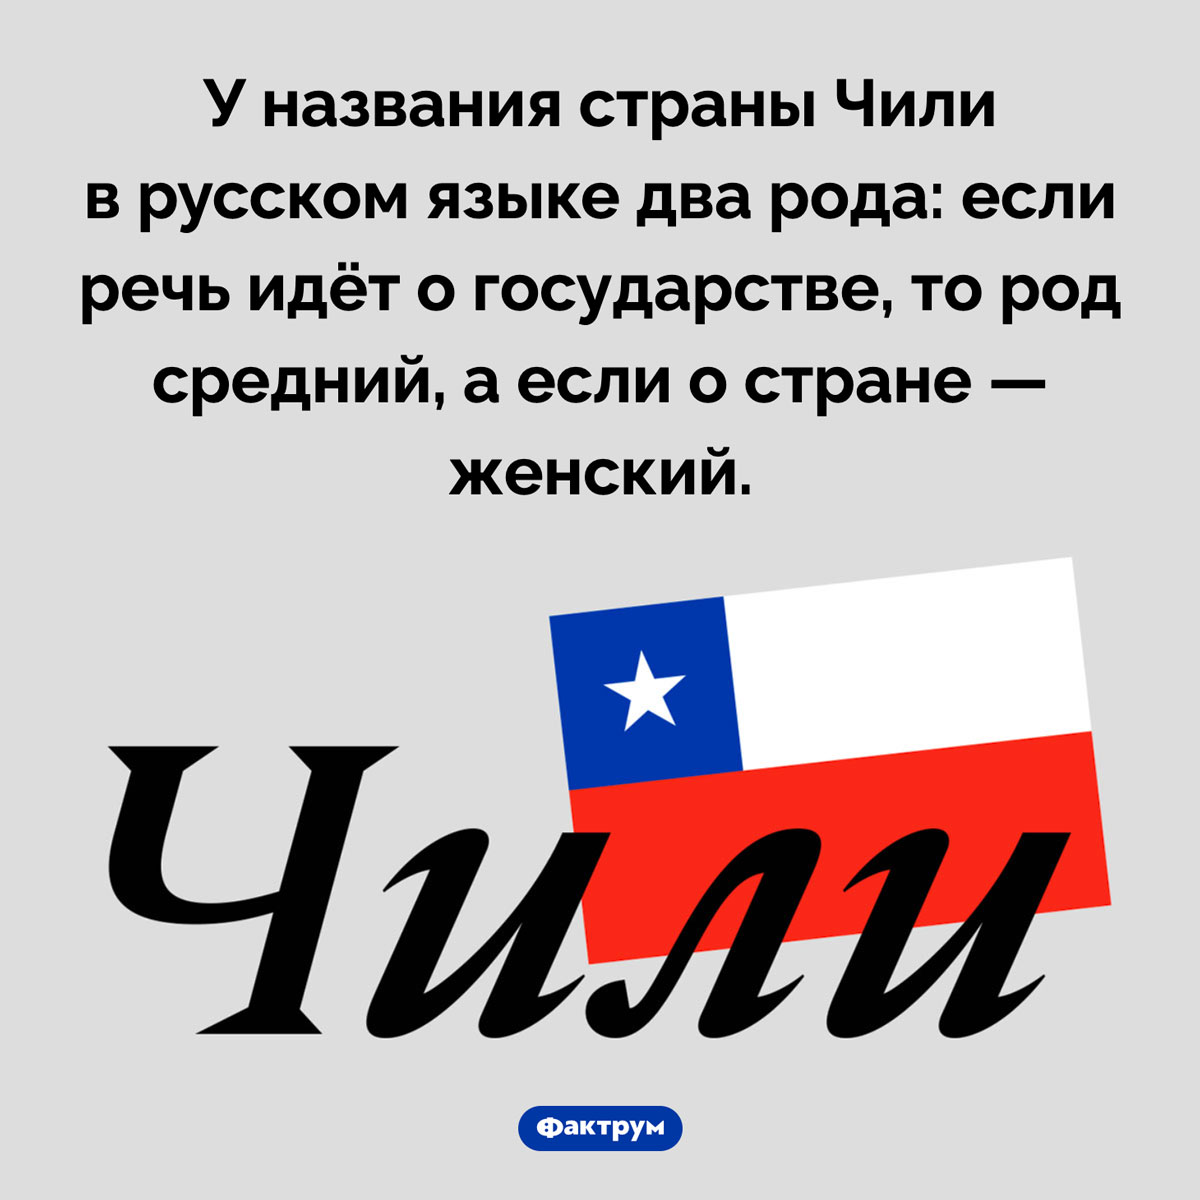 Как в русском языке склоняют название страны Чили. У названия страны Чили в русском языке два рода: если речь идёт о государстве, то род средний, а если о стране — женский.